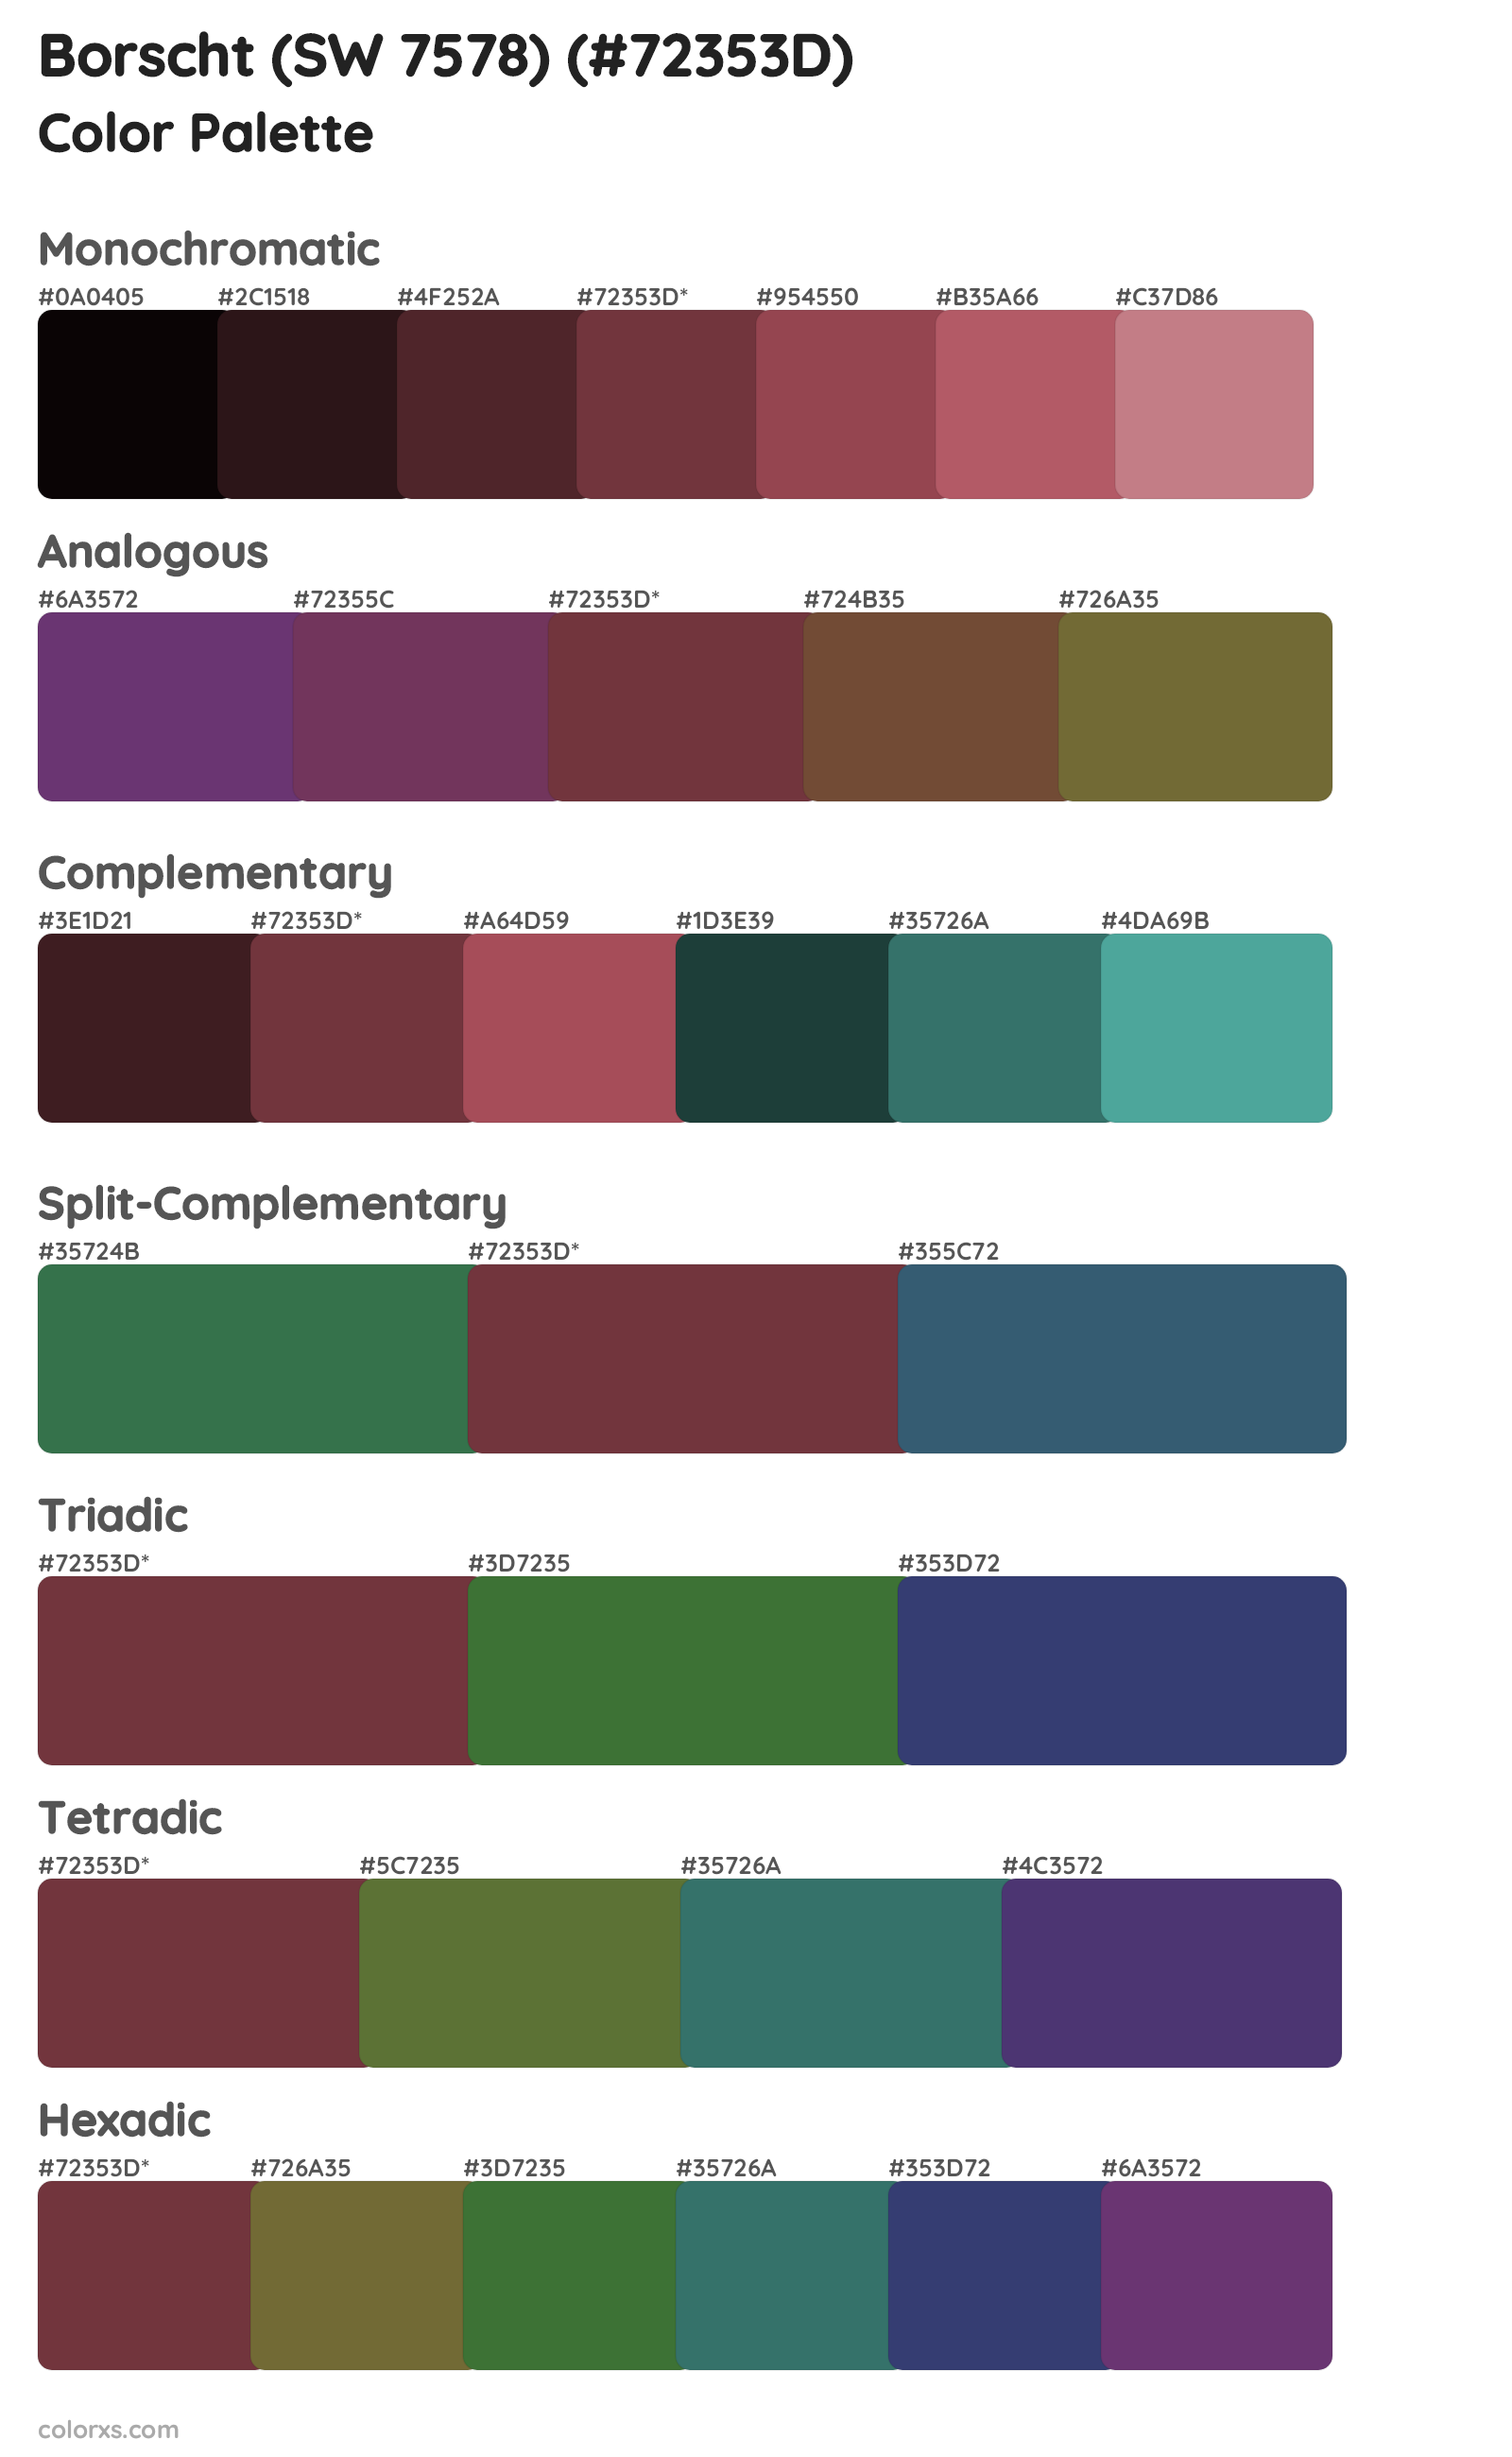 Borscht (SW 7578) Color Scheme Palettes